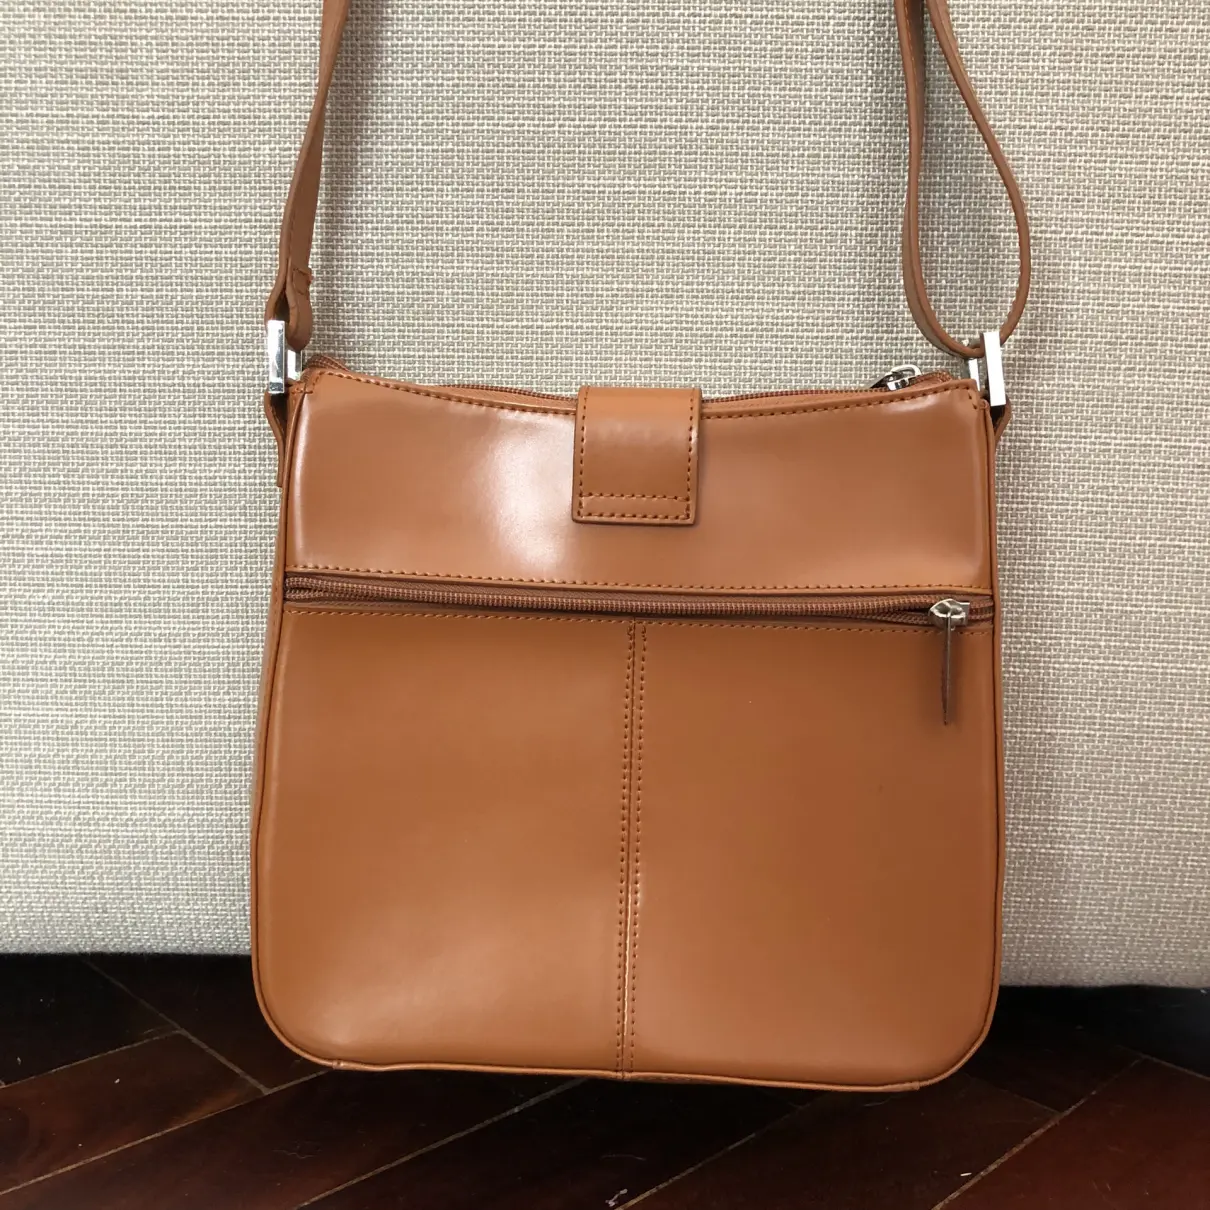 Buy Mugler Leather handbag online - Vintage